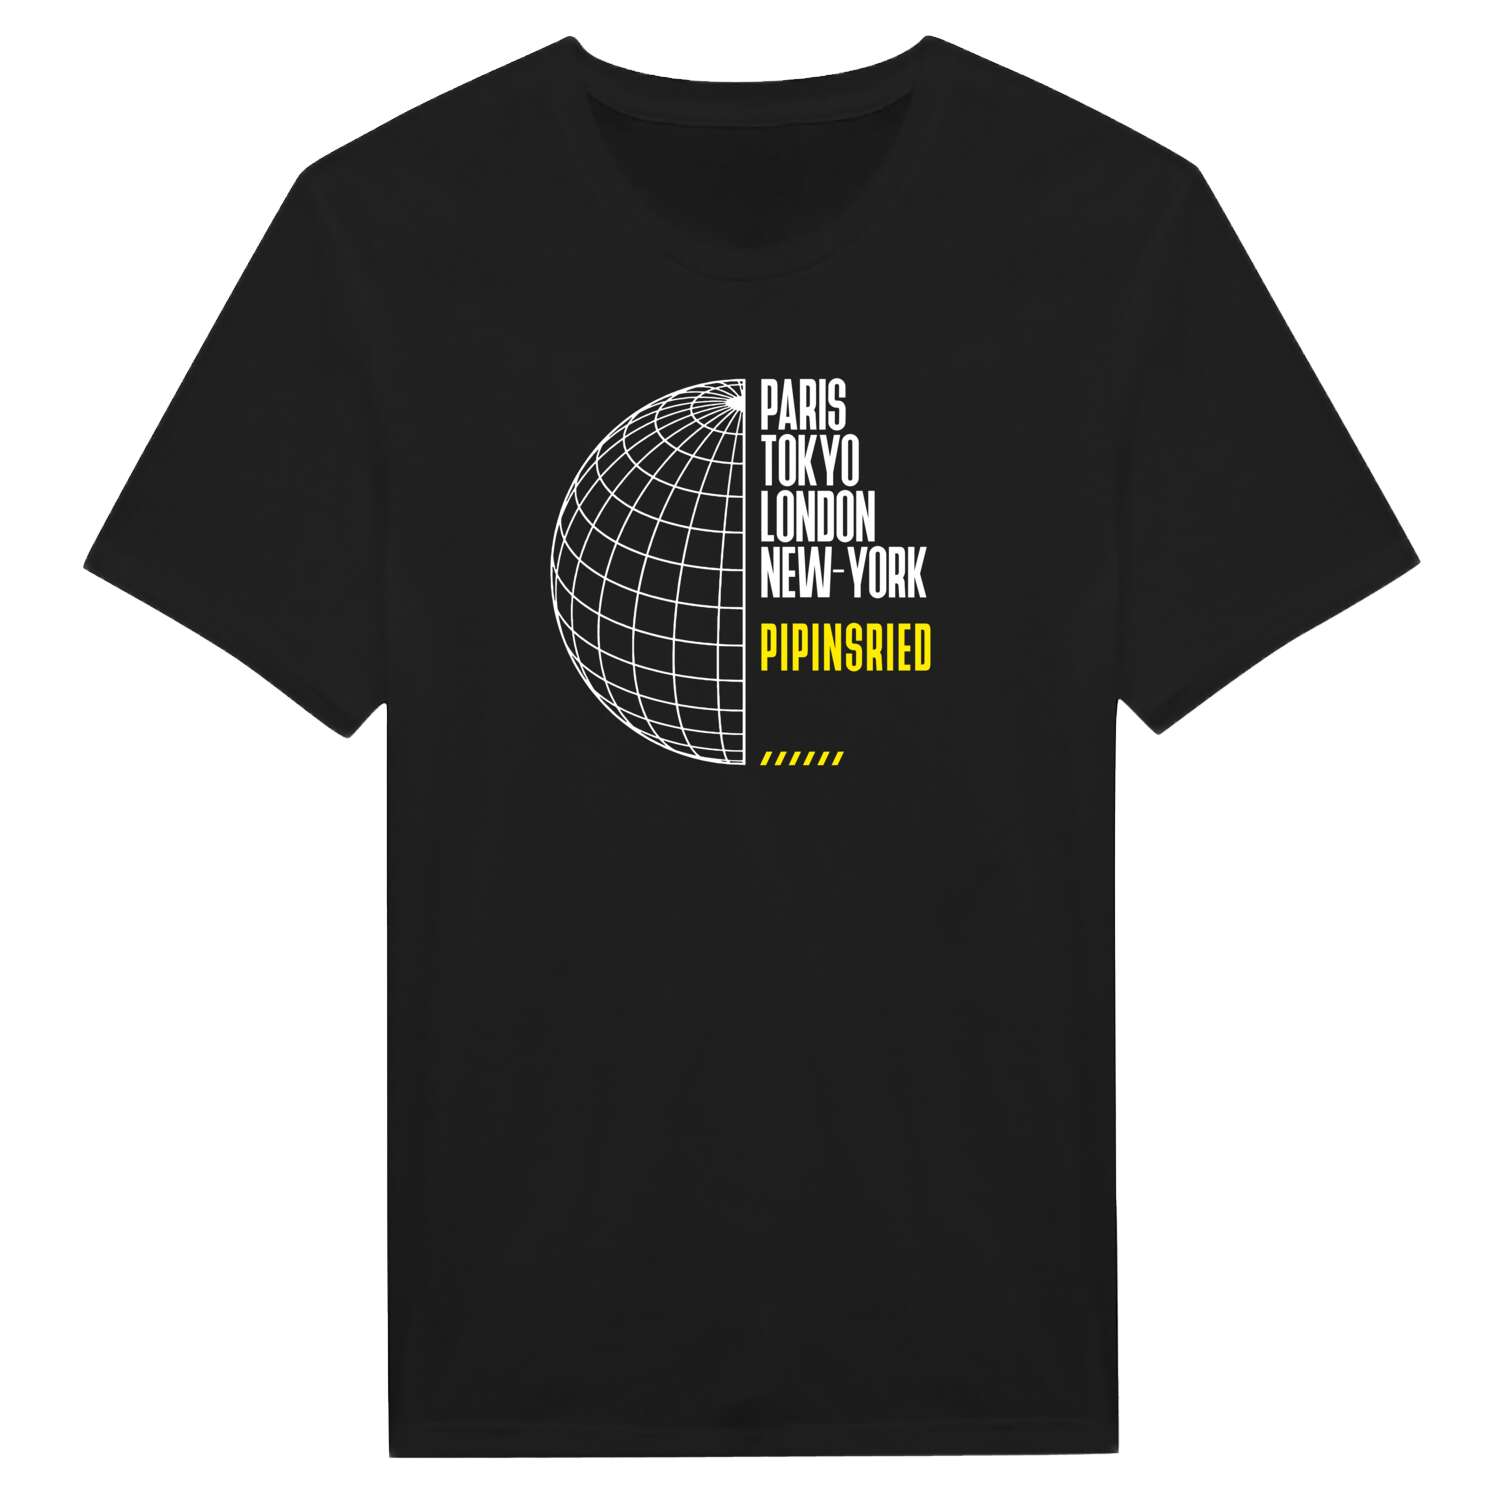 Pipinsried T-Shirt »Paris Tokyo London«